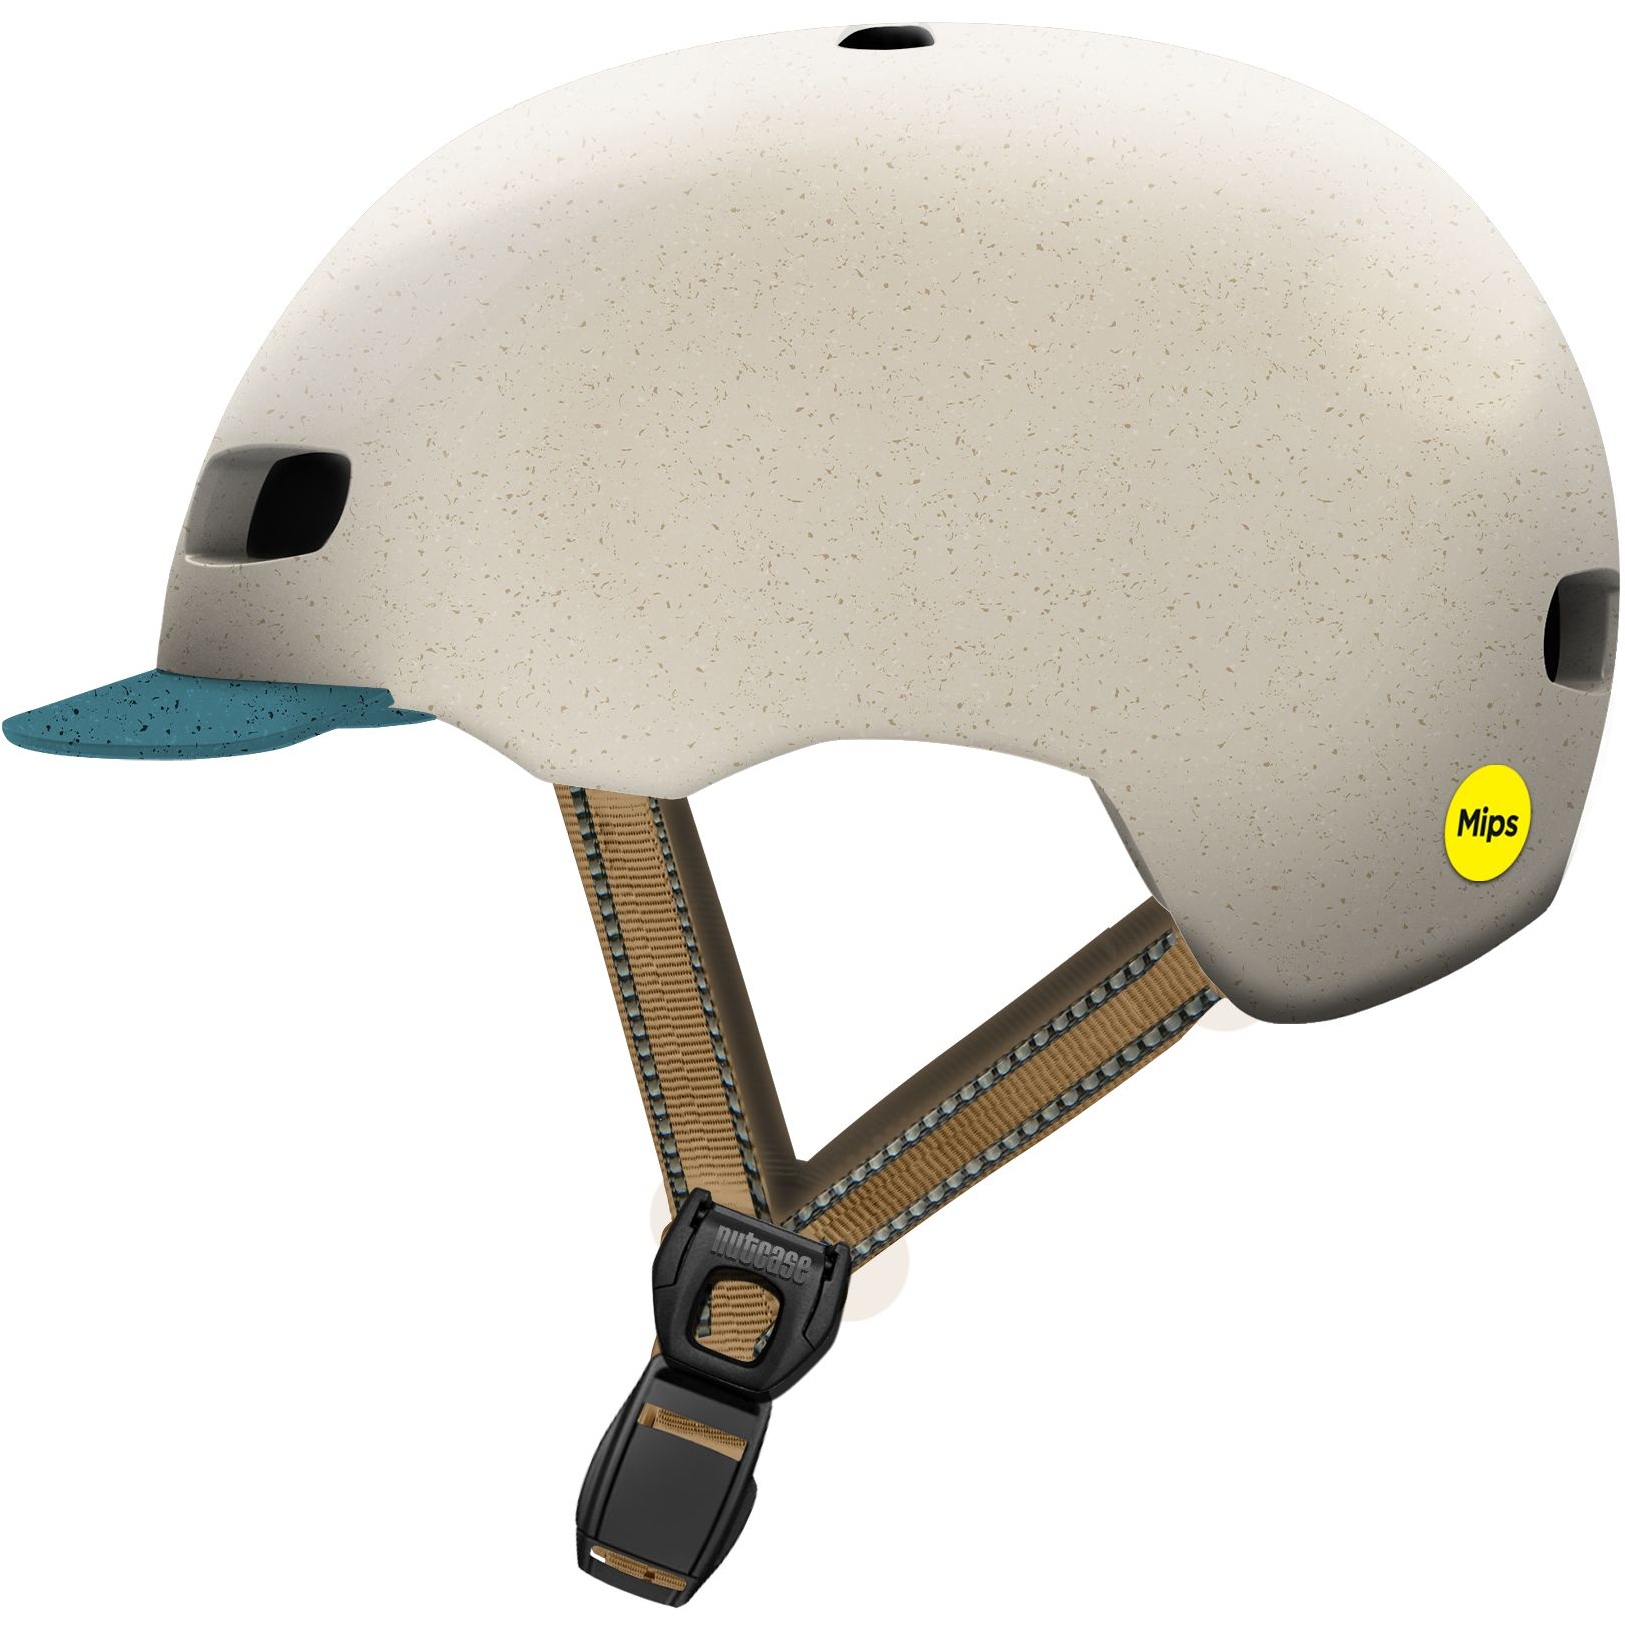 Productfoto van Nutcase Street Eco MIPS Helmet - Toes in the Sand